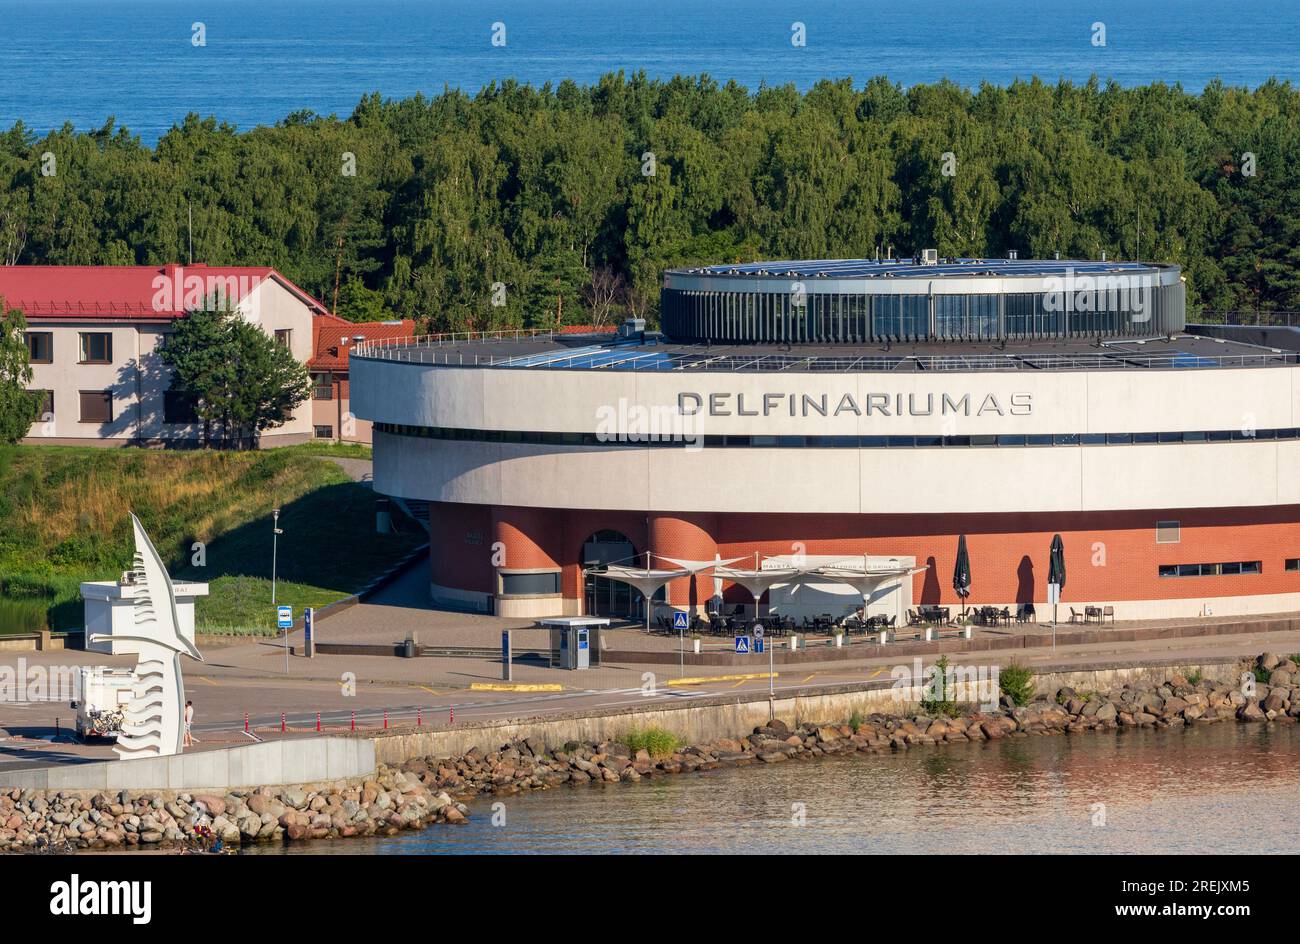 Musée maritime et delphinarium, Klaipeda, Lituanie, Europe Banque D'Images